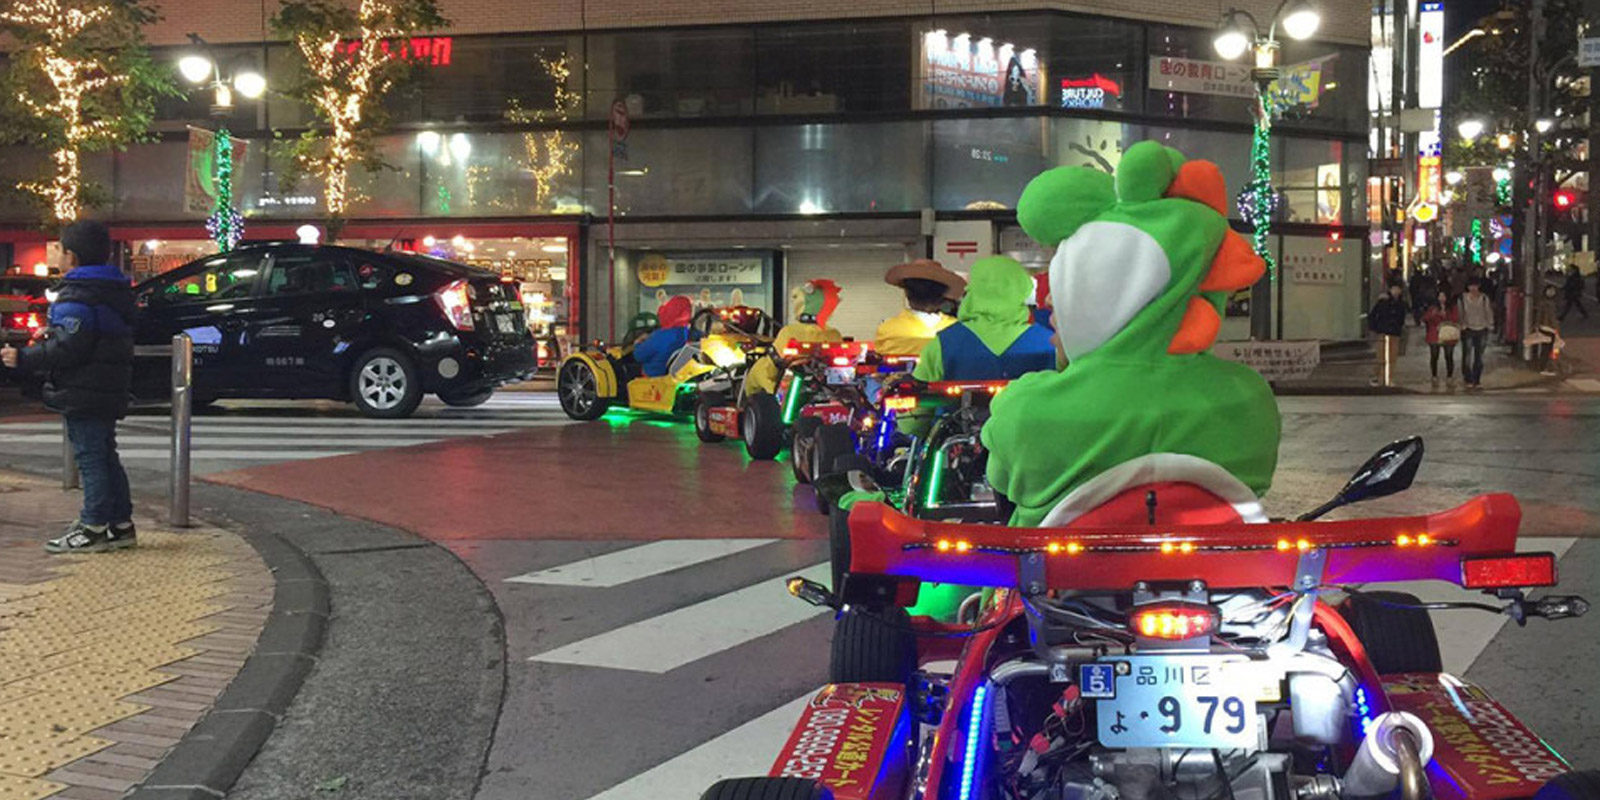 Nintendo denuncia ante la ley los paseos "a lo Mario Kart" de la compañía MariCAR